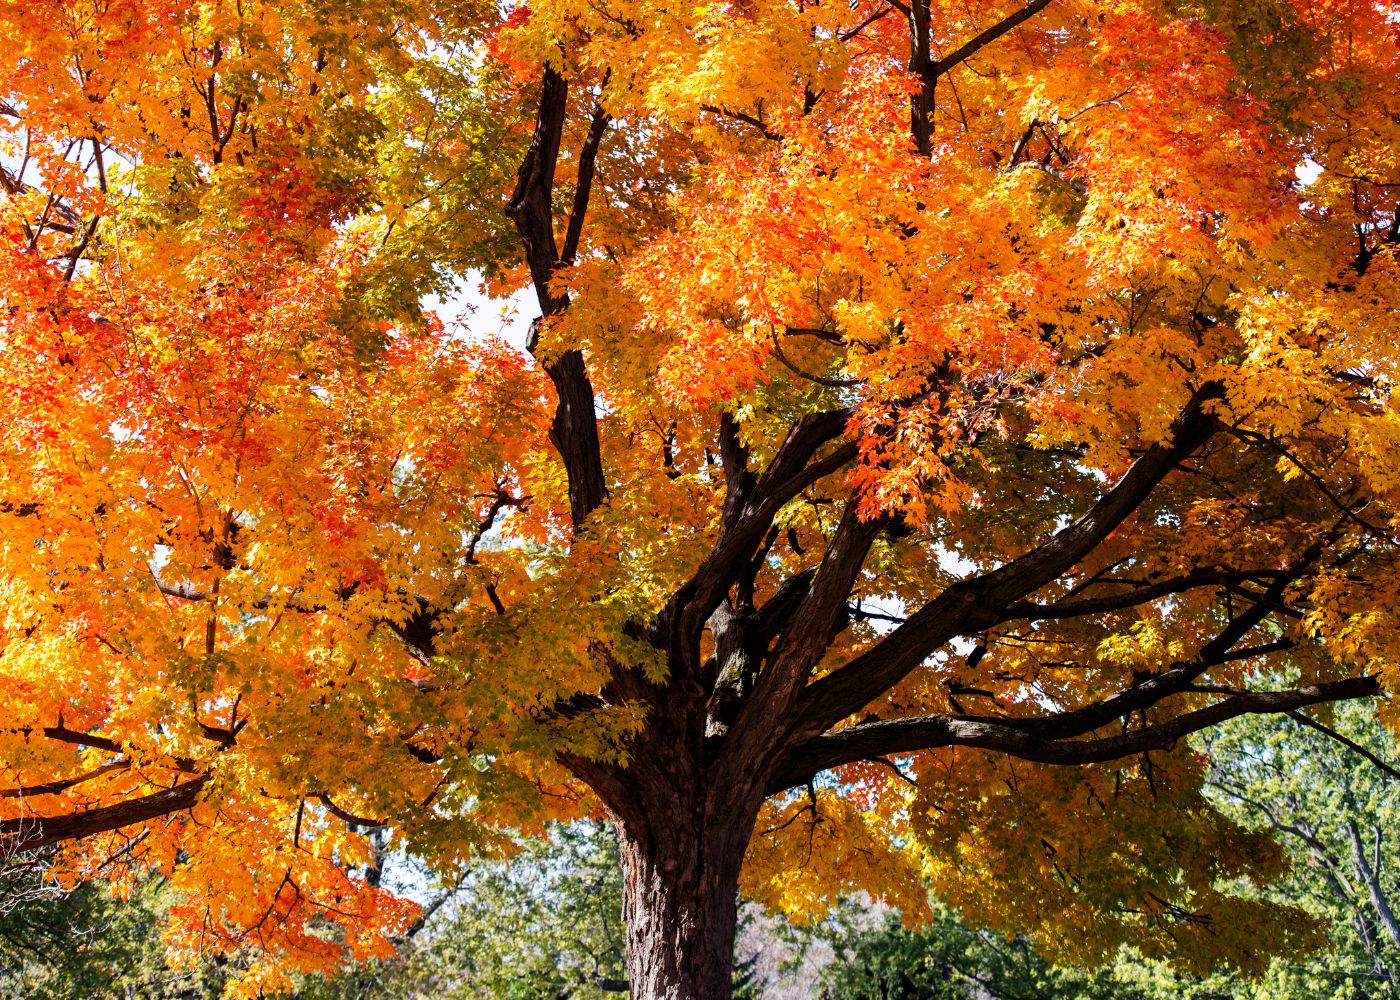 τύποι δέντρων σφενδάμου - ζαχαροπλαστική το φθινόπωρο